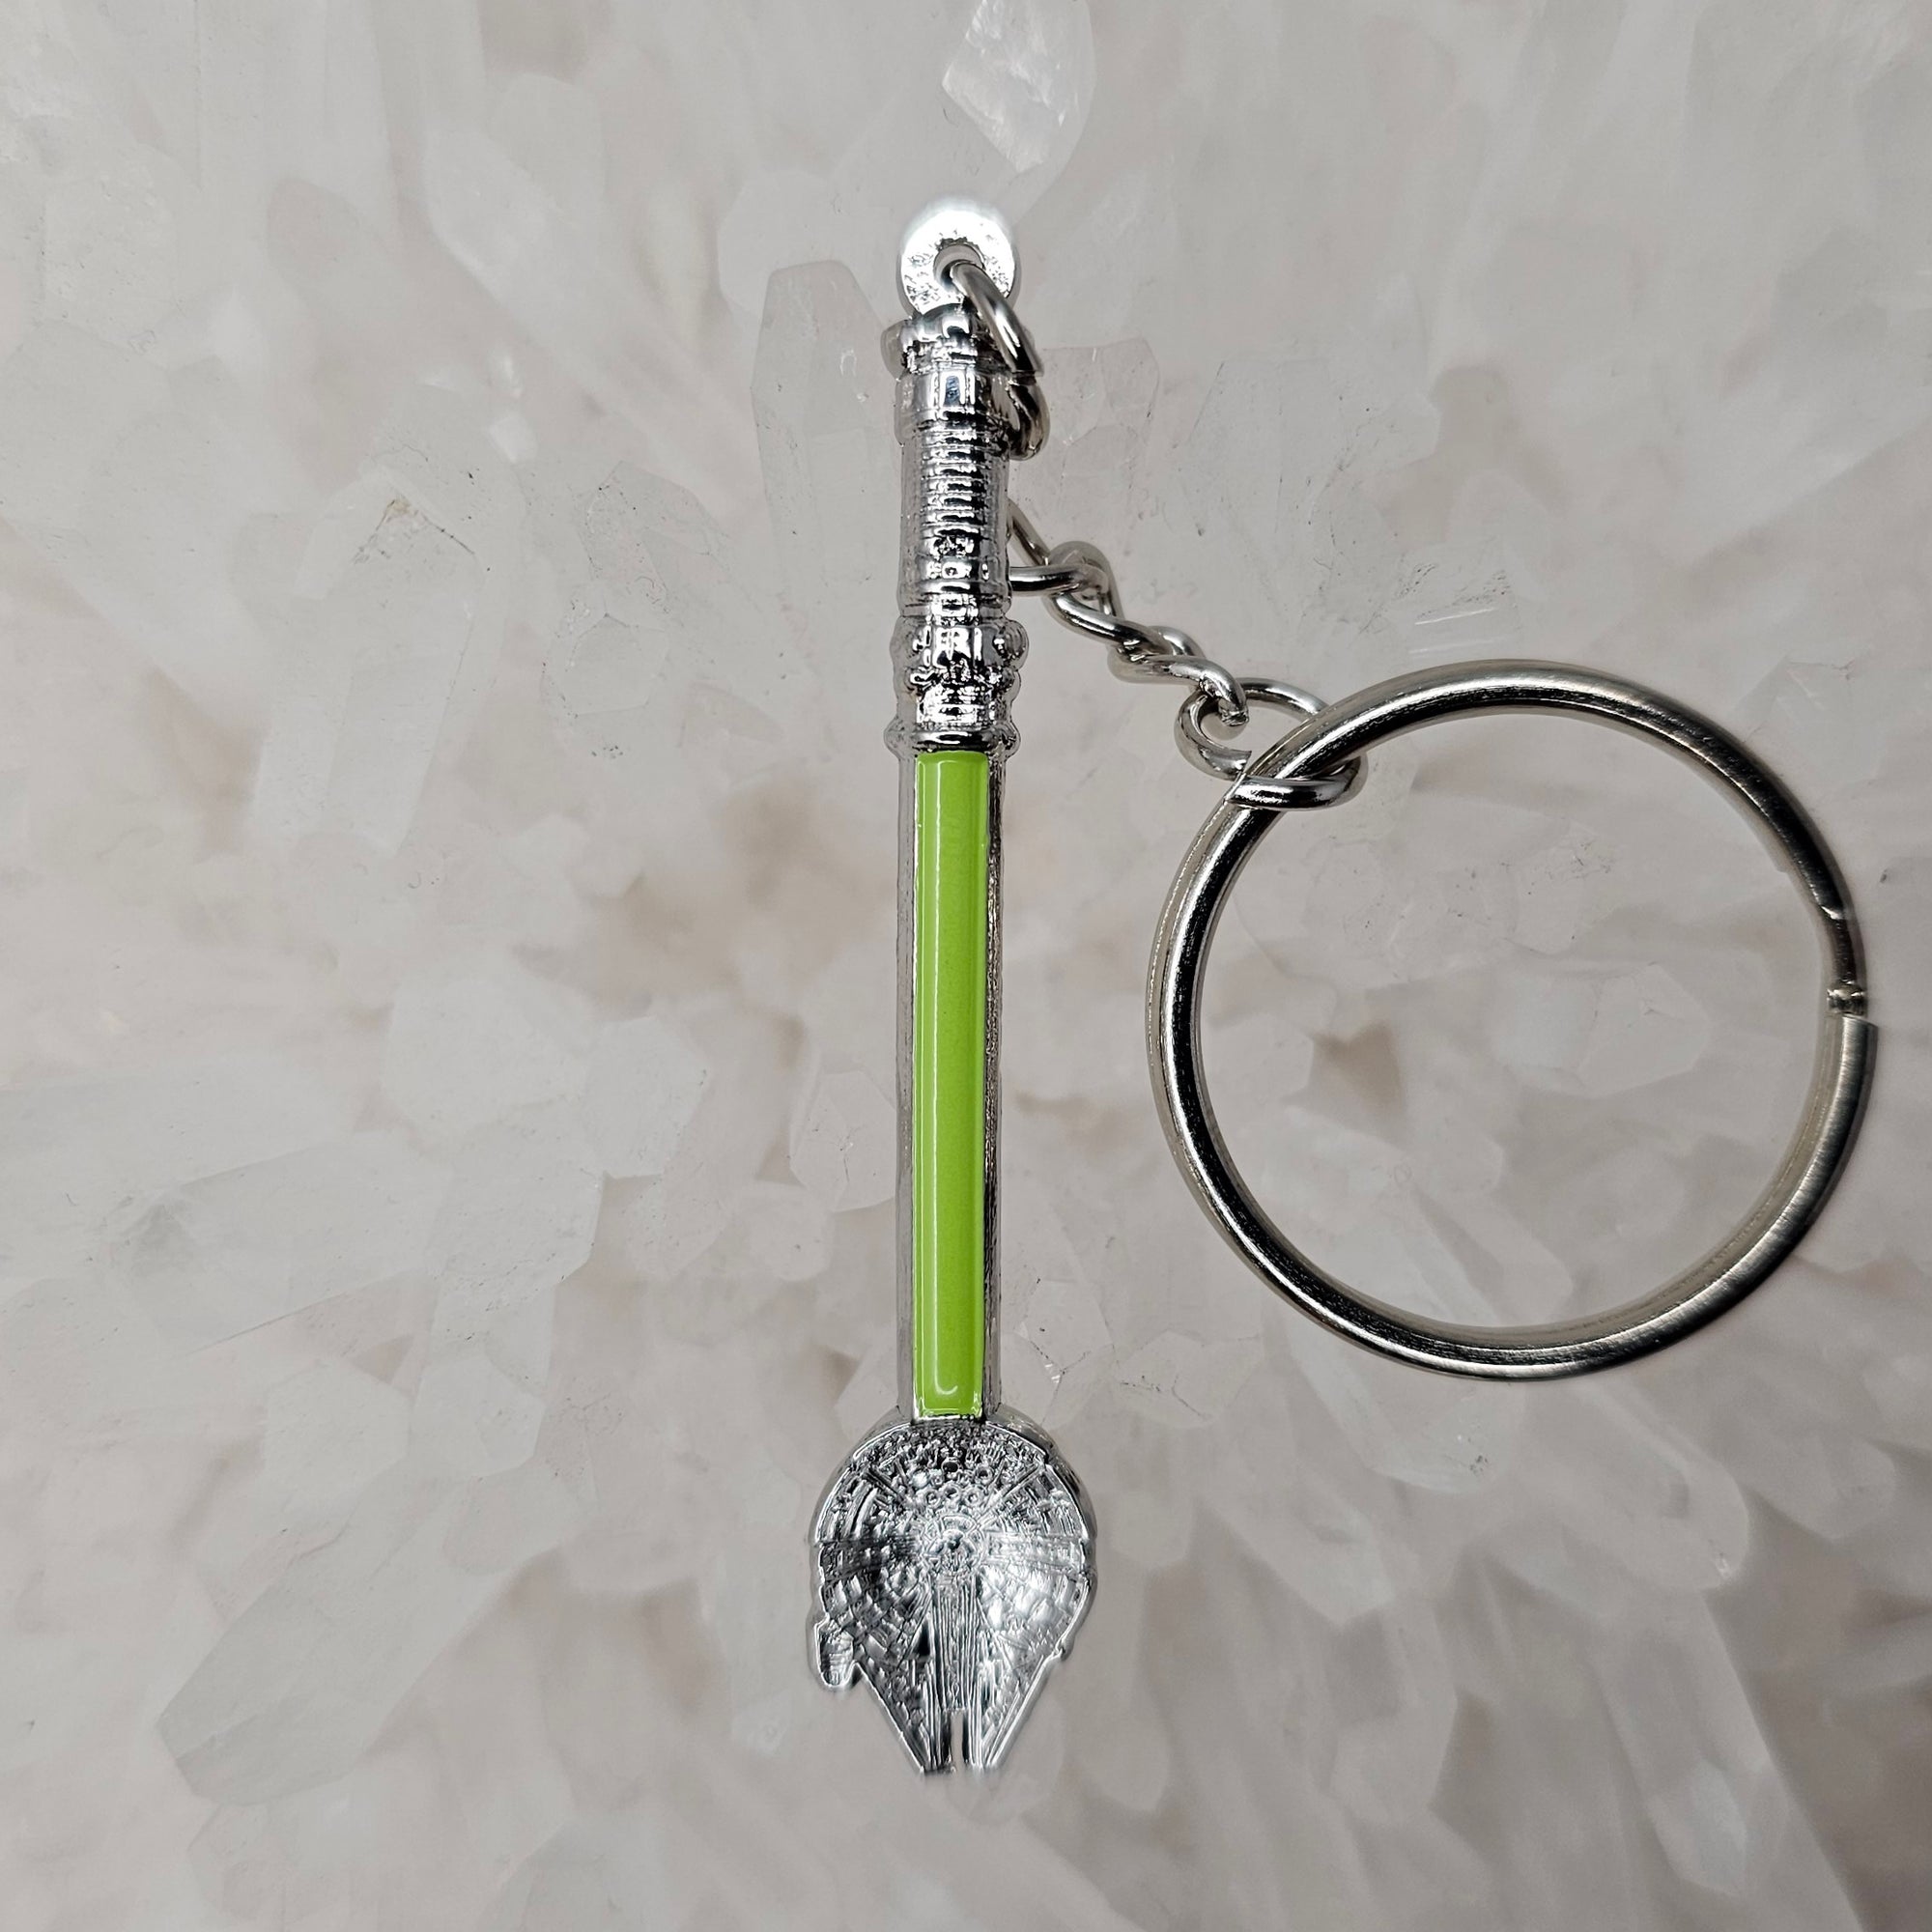 Spoonlenium Falcon Star Spoon Wars Jedi Green 3D Metal Mini Spoon Keychains Key-Chain Key Chains